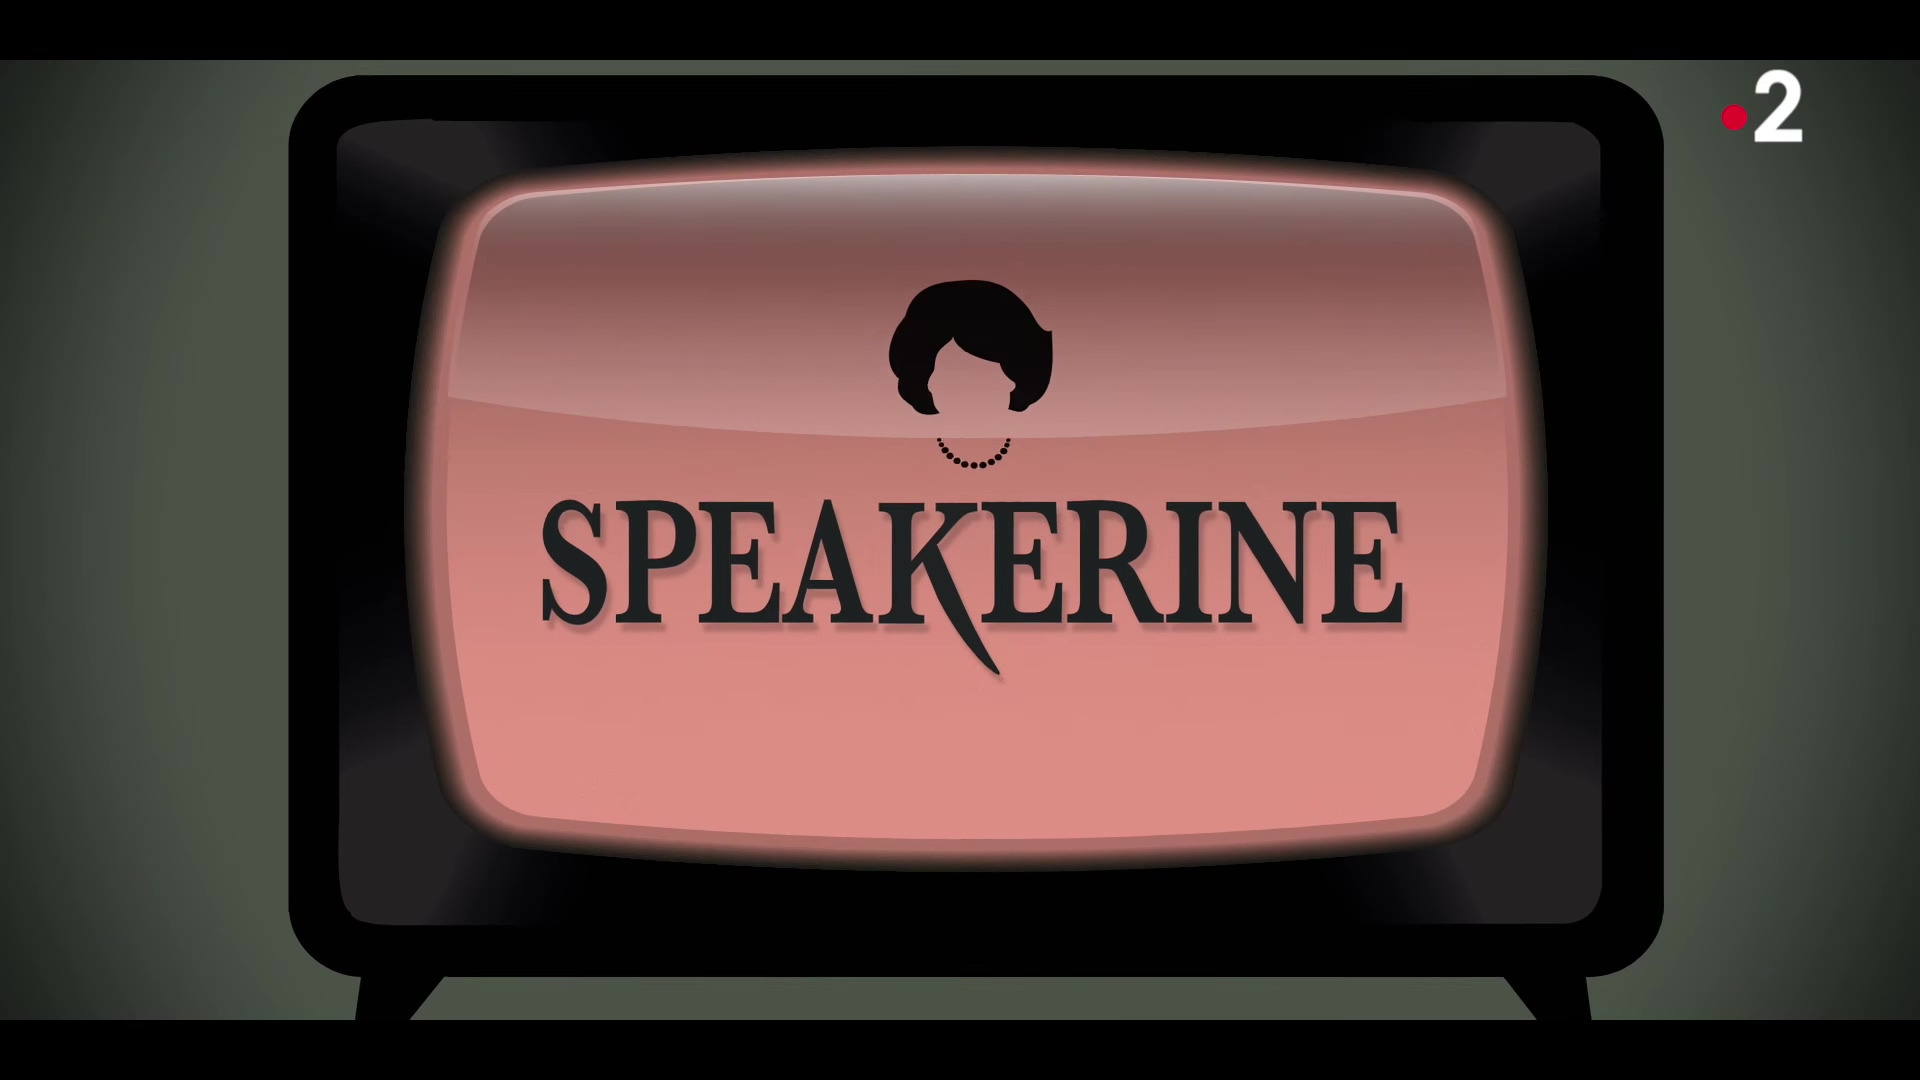 Show Speakerine